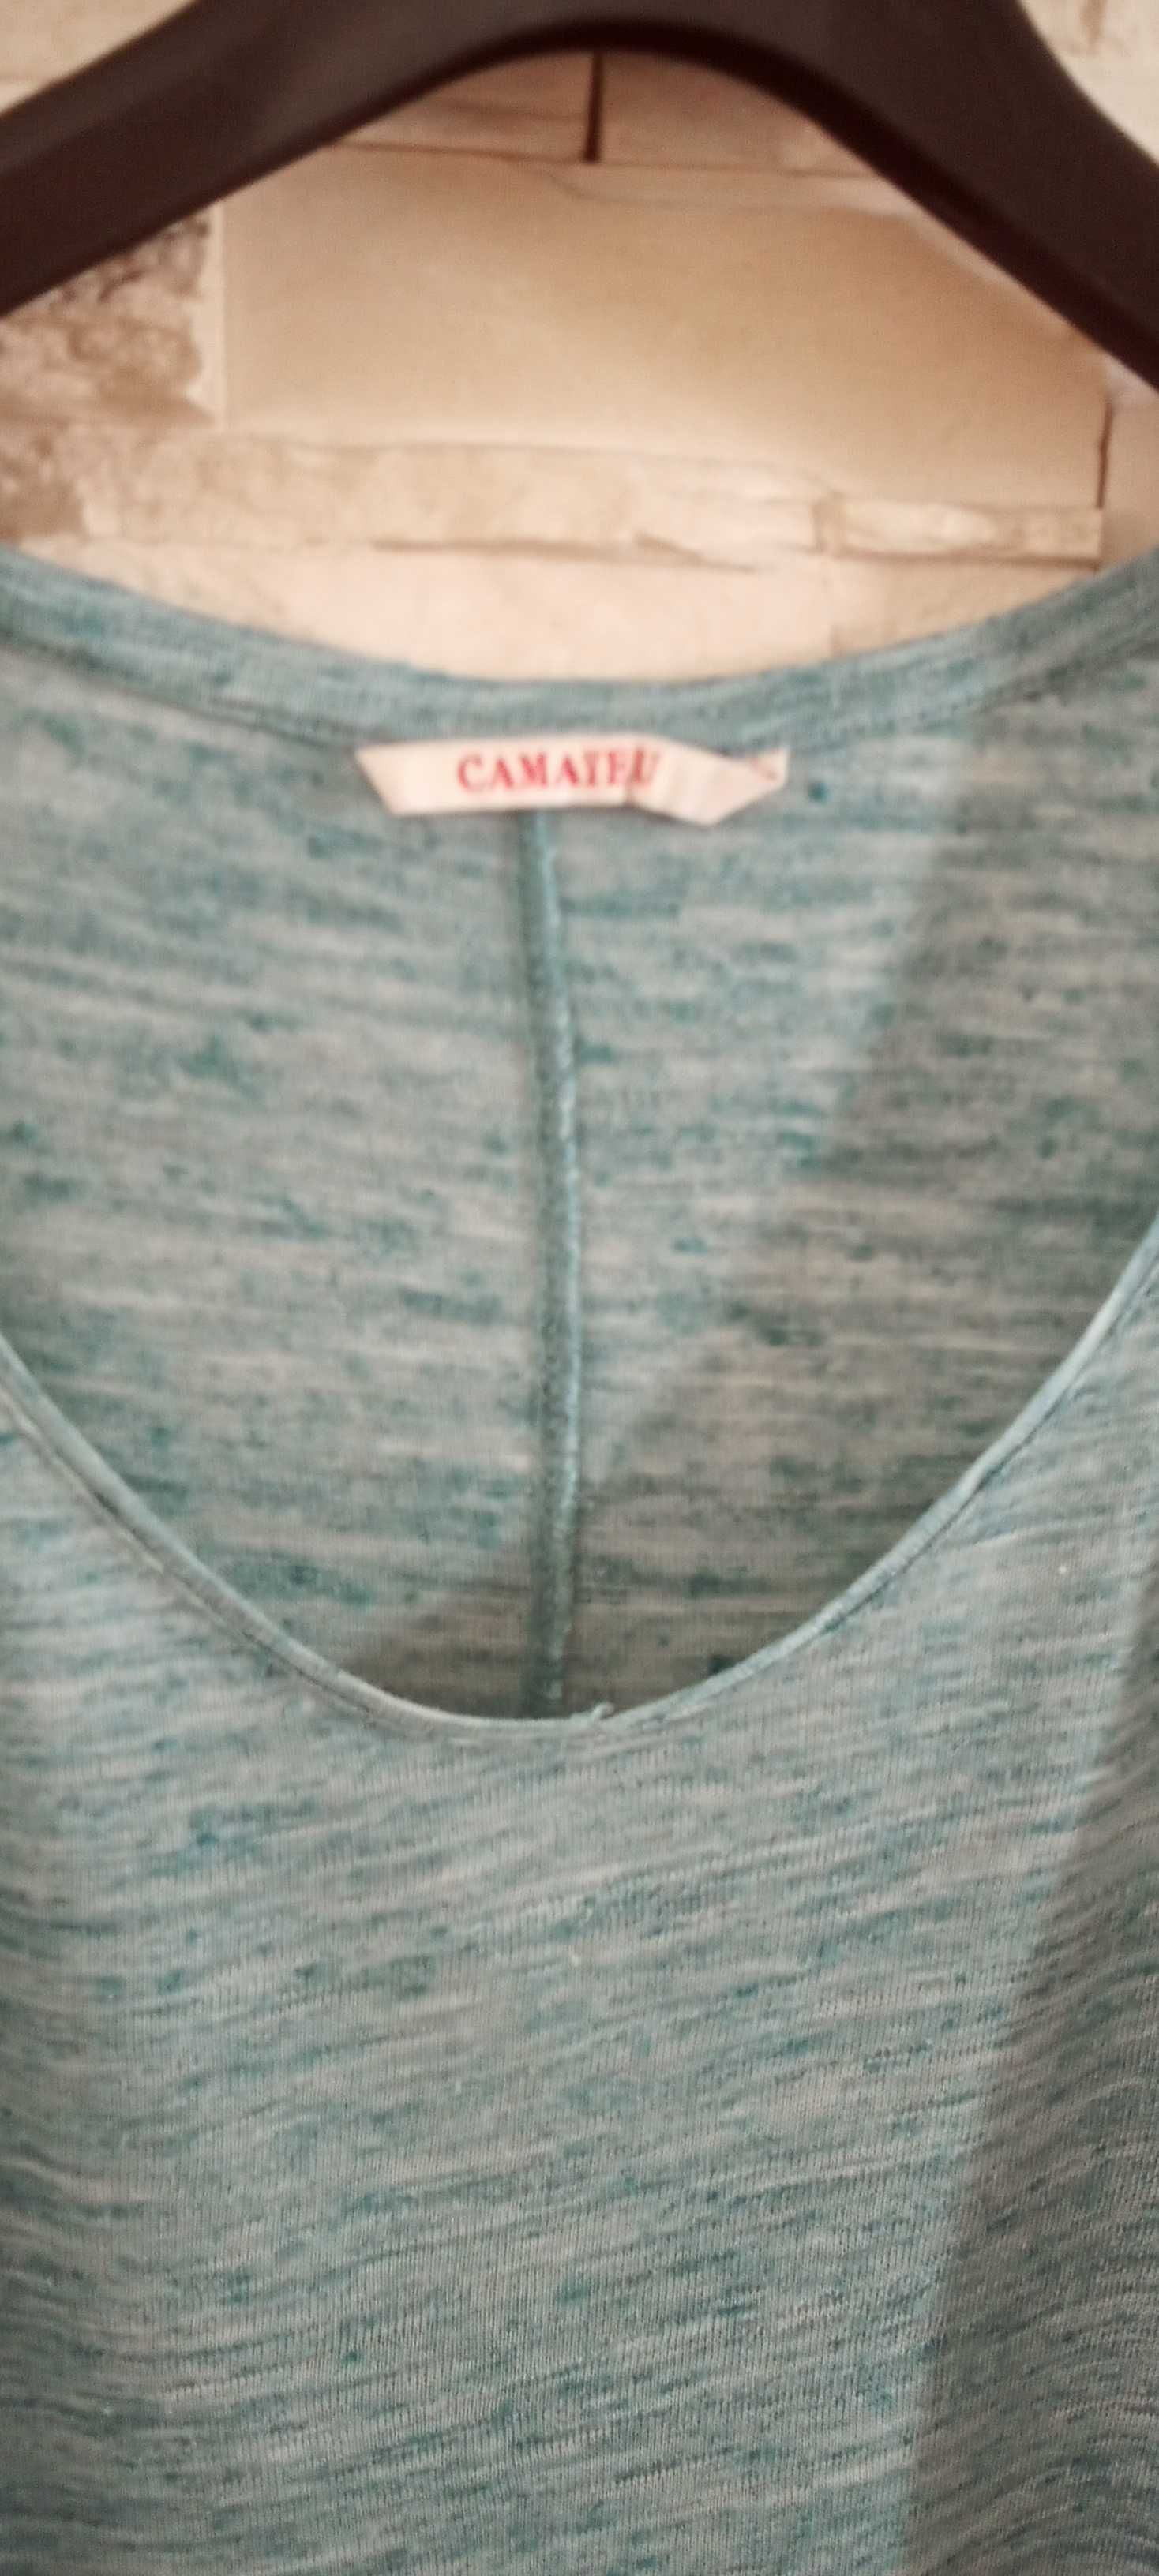 T- shirt damski morki przewiewny S/36 Camaïeu